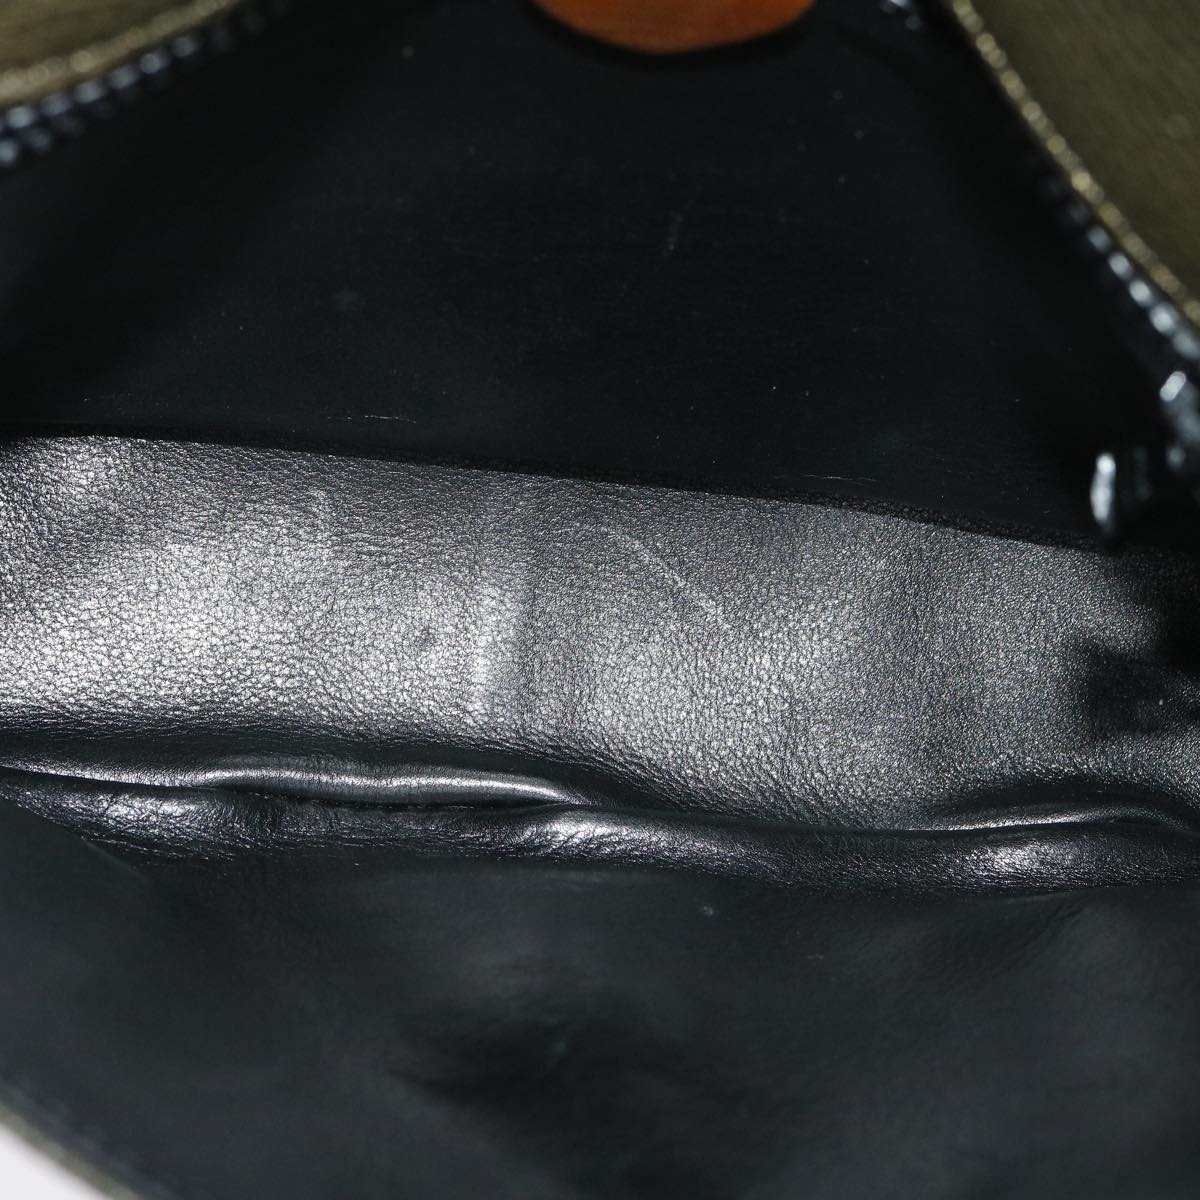 CELINE Shoulder Bag Leather Gray Brown Auth ar6880